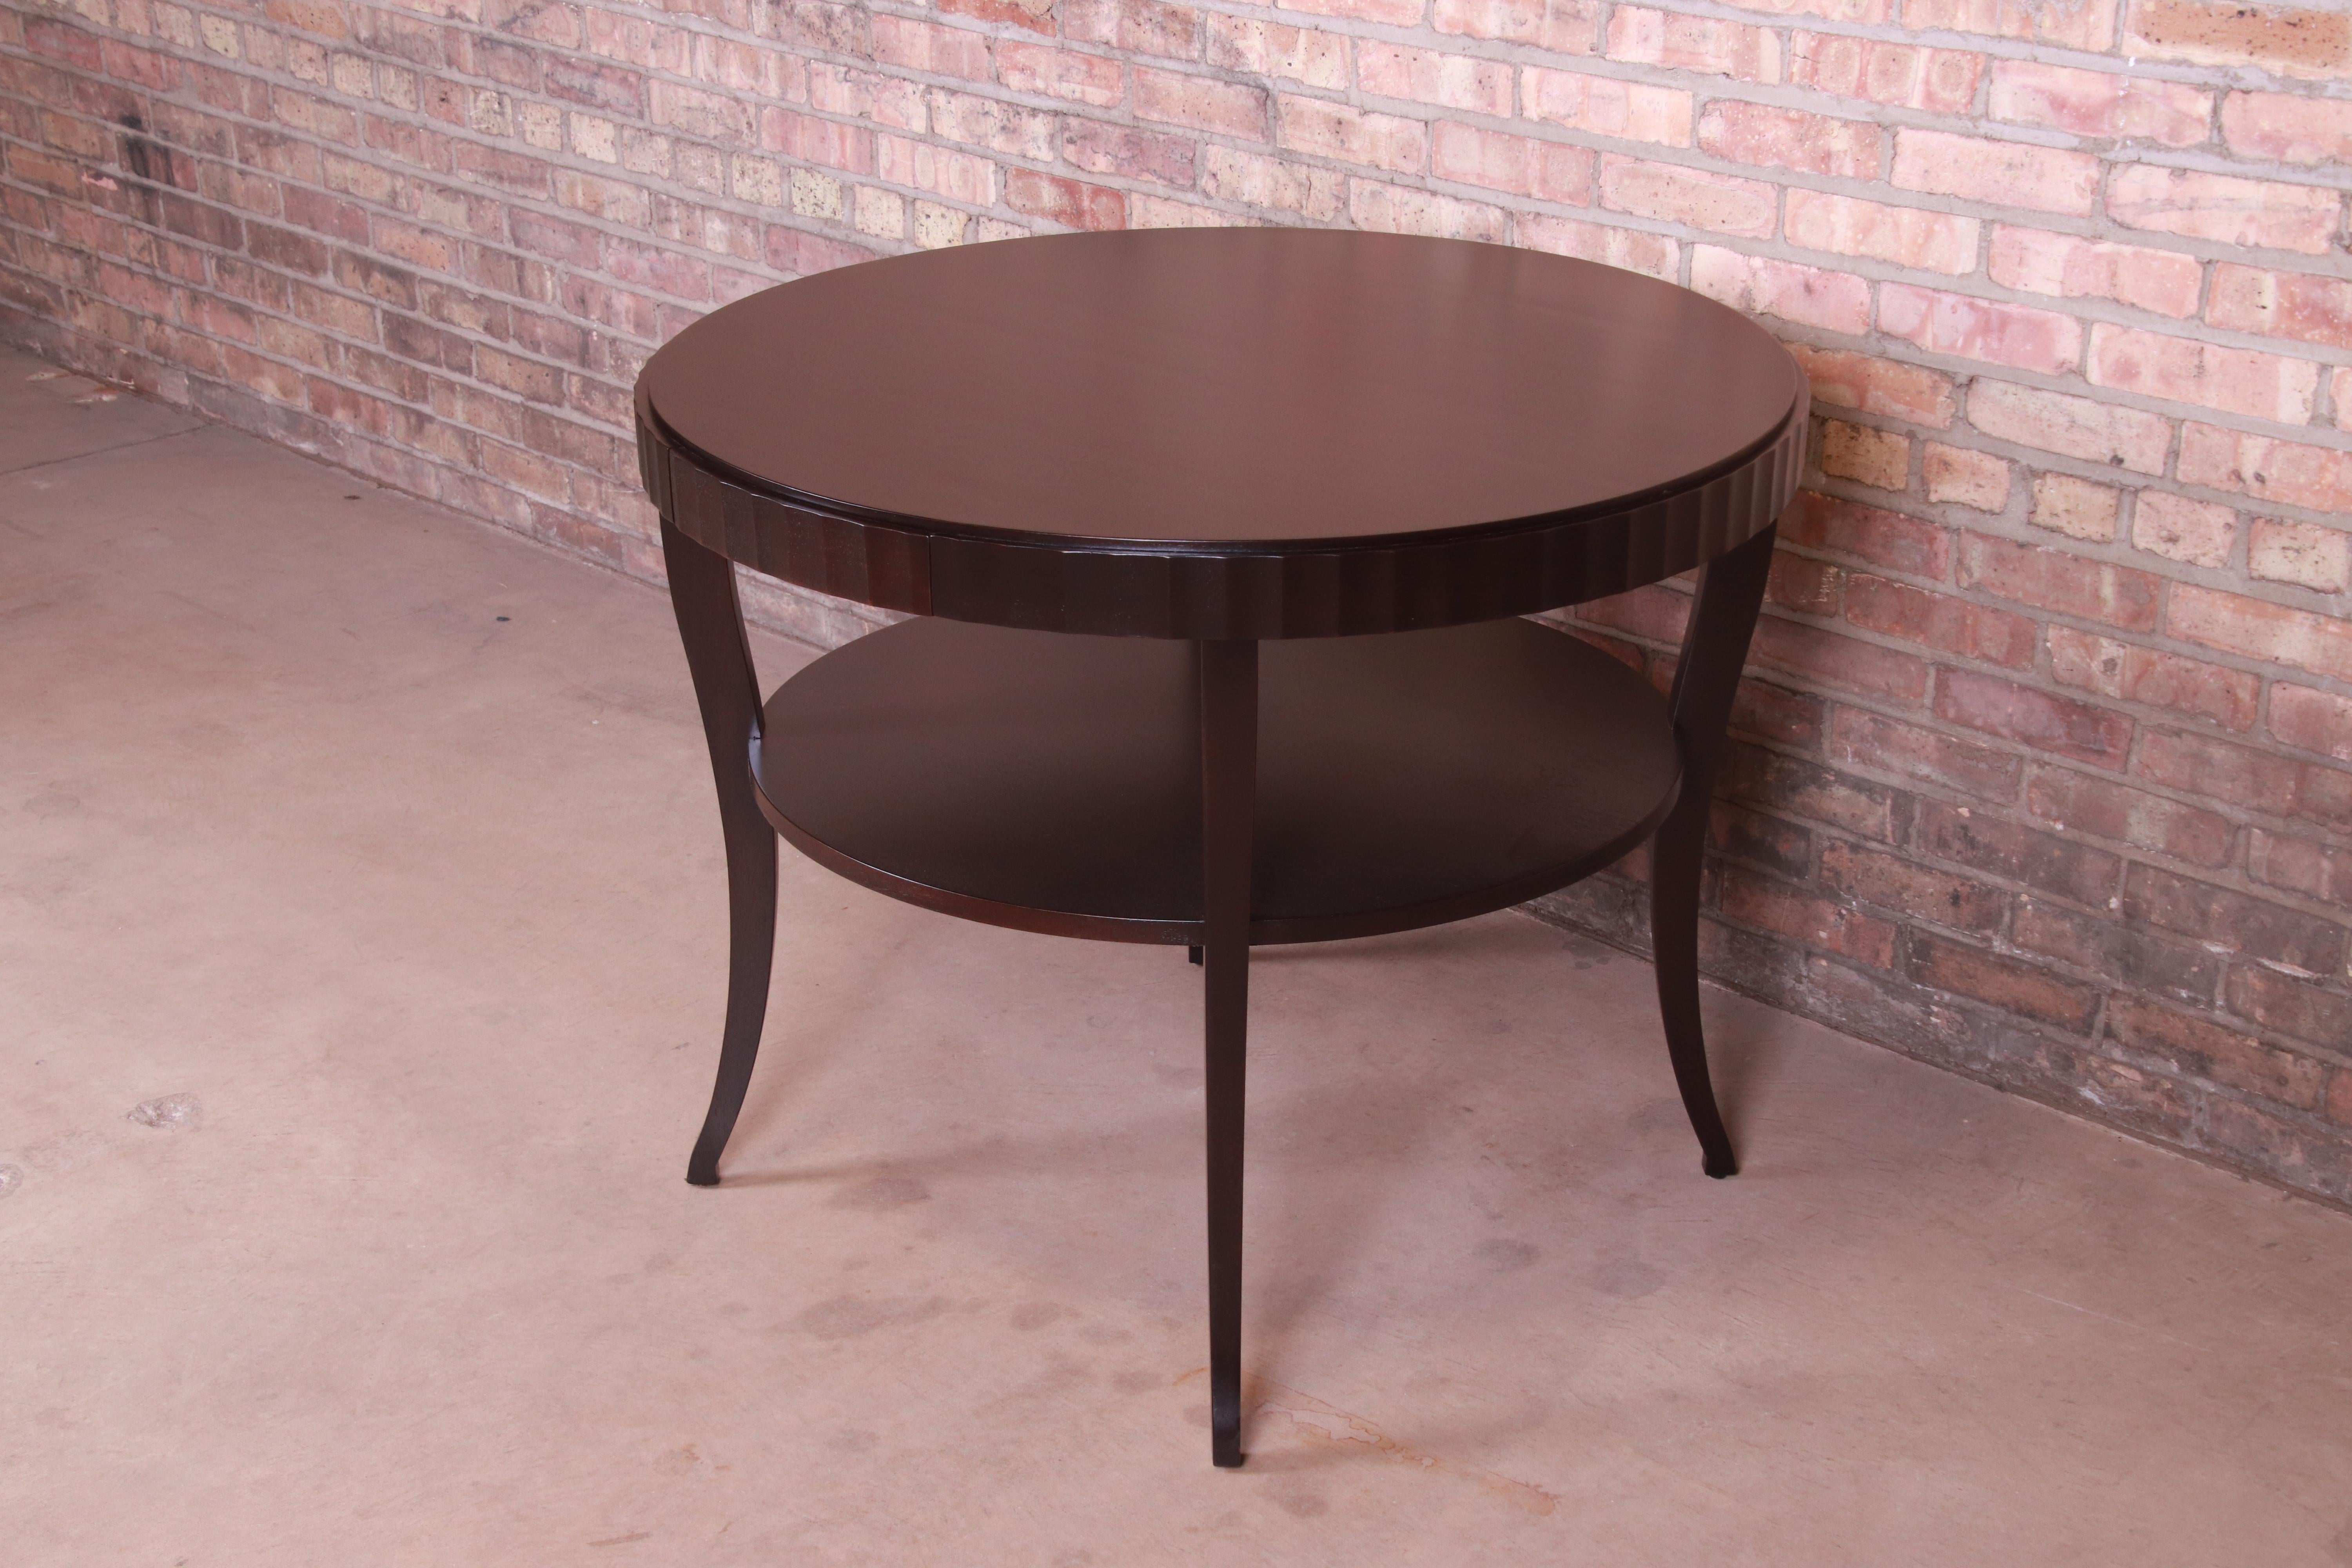 Ein eleganter, moderner Mahagoni-Tisch mit zwei Ebenen für Spiele oder als Mitteltisch

Von Barbara Barry für Baker Furniture

USA, ca. 1990er Jahre

Dunkles Mahagoni, mit Wellenschliff und einer Schublade.

Maße: 38